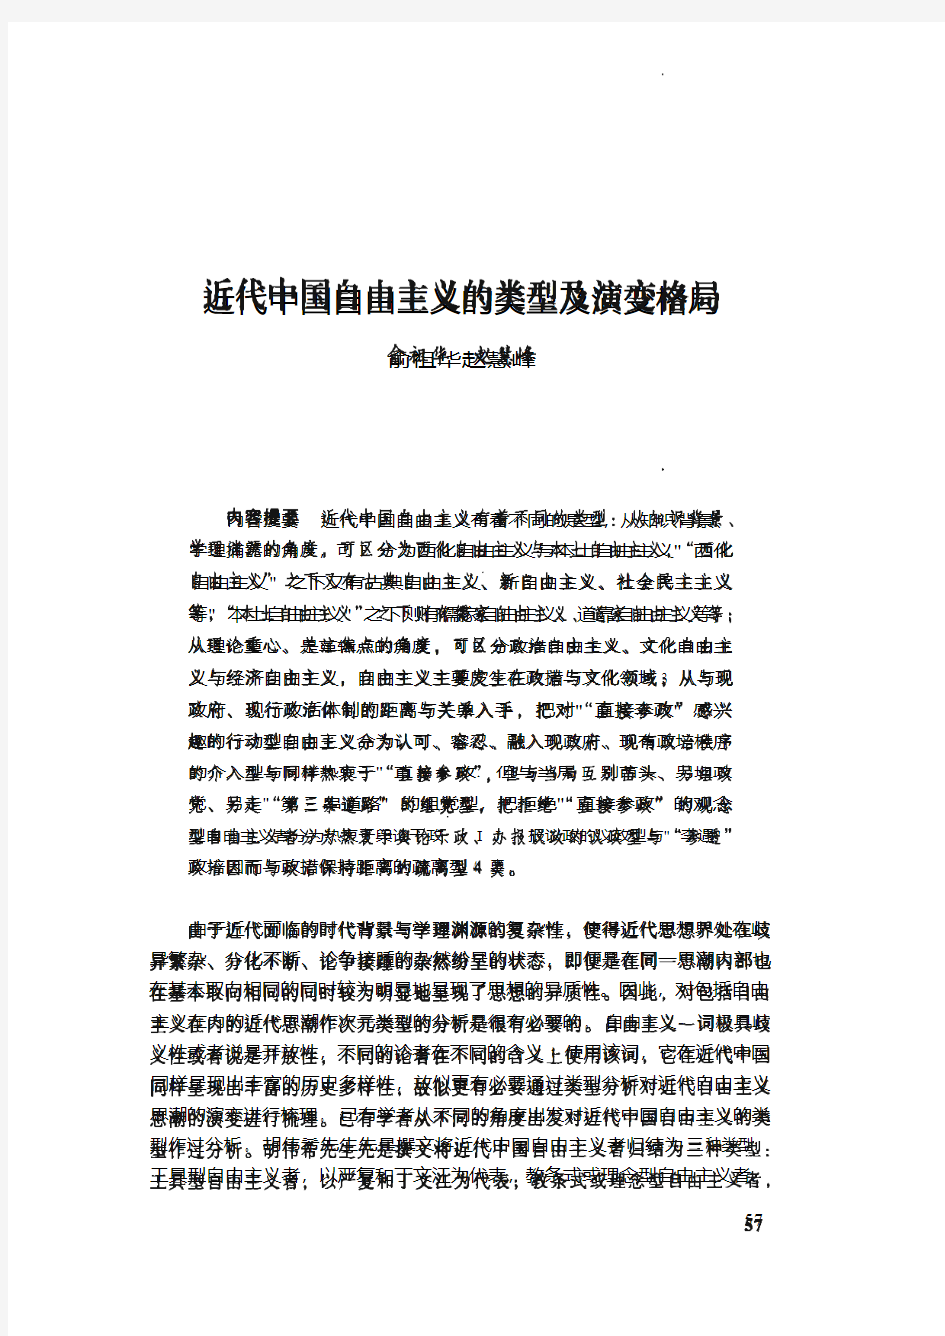 俞祖华近代中国自由主义类型及演变格局